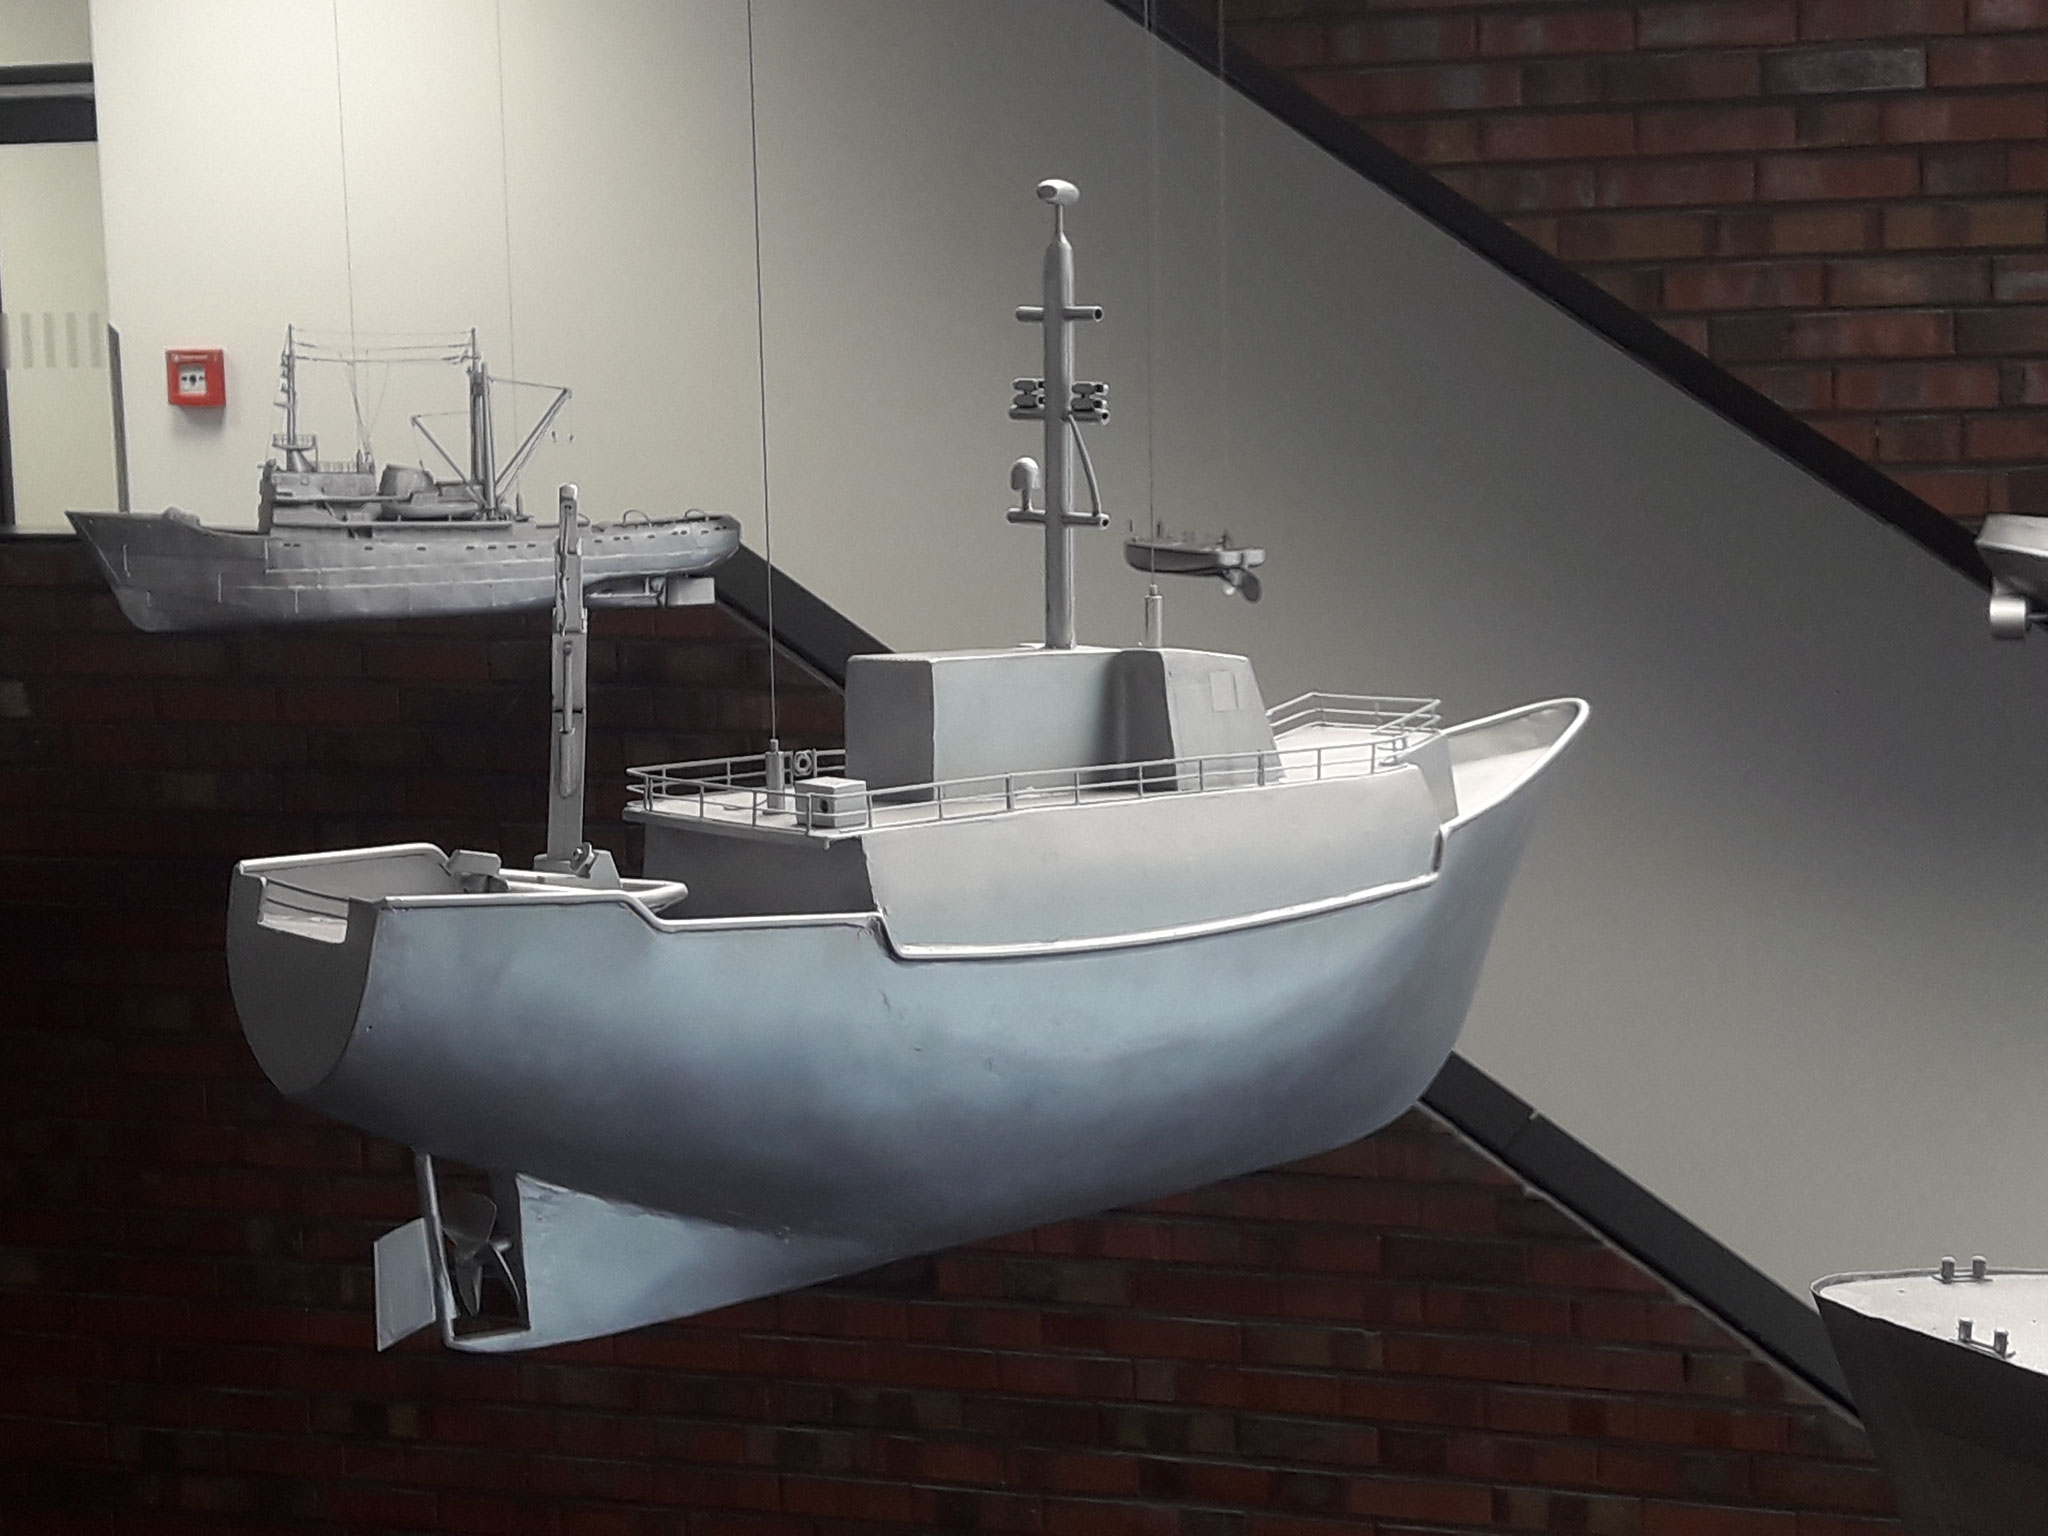 Modellboote für Kunst am Bau, Auftrag für Atelier Mannstein&Vill, Berlin / Strahlsund 